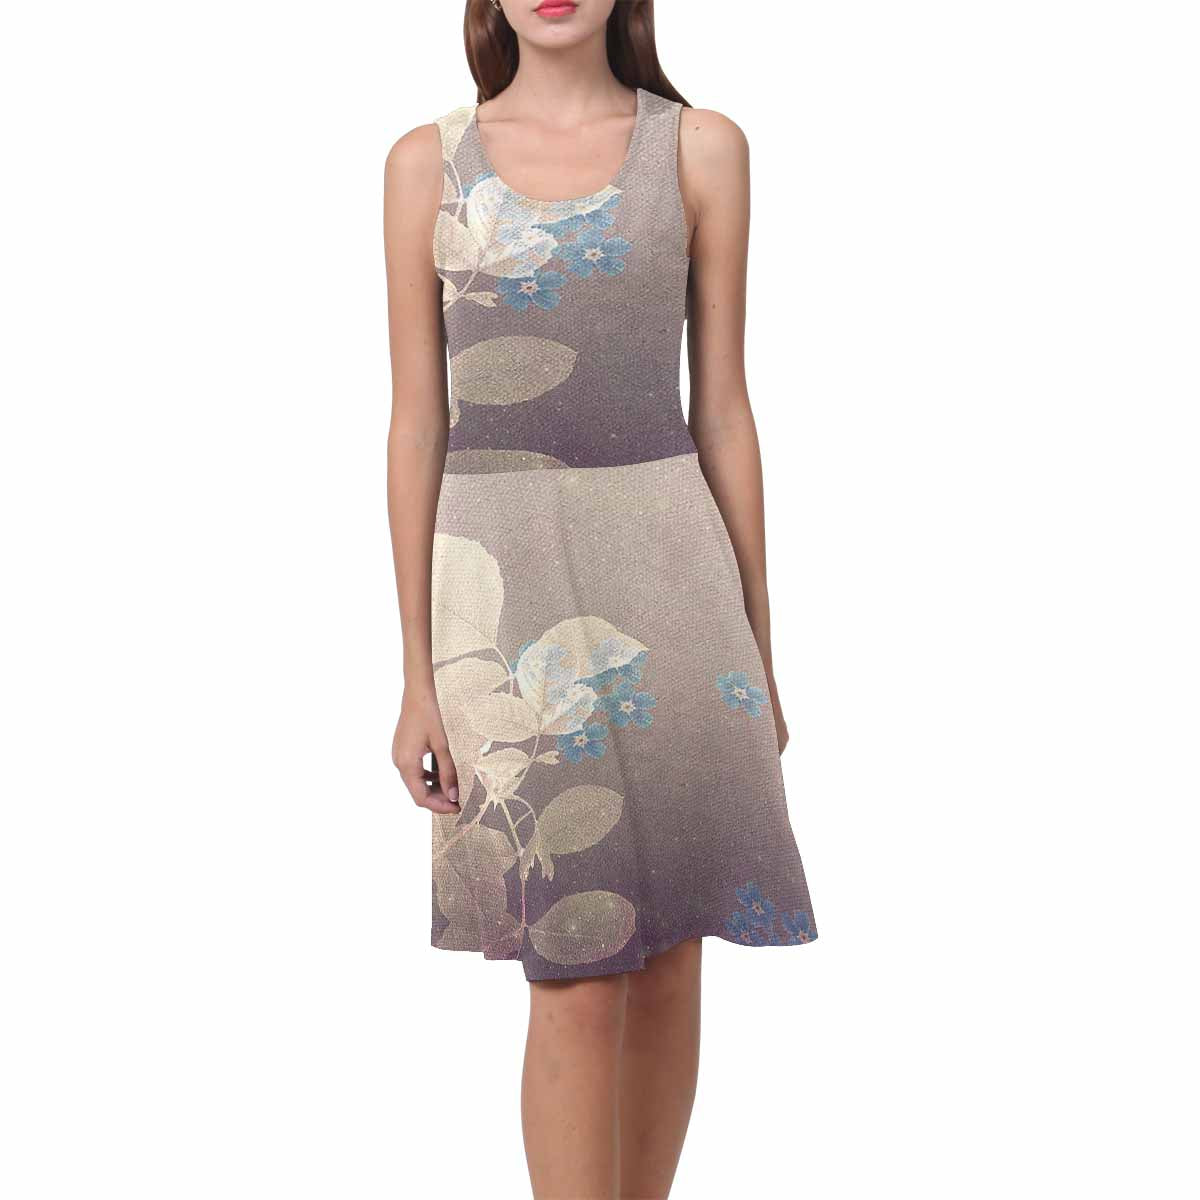 Antique General summer dress, MODEL 09534, design 48